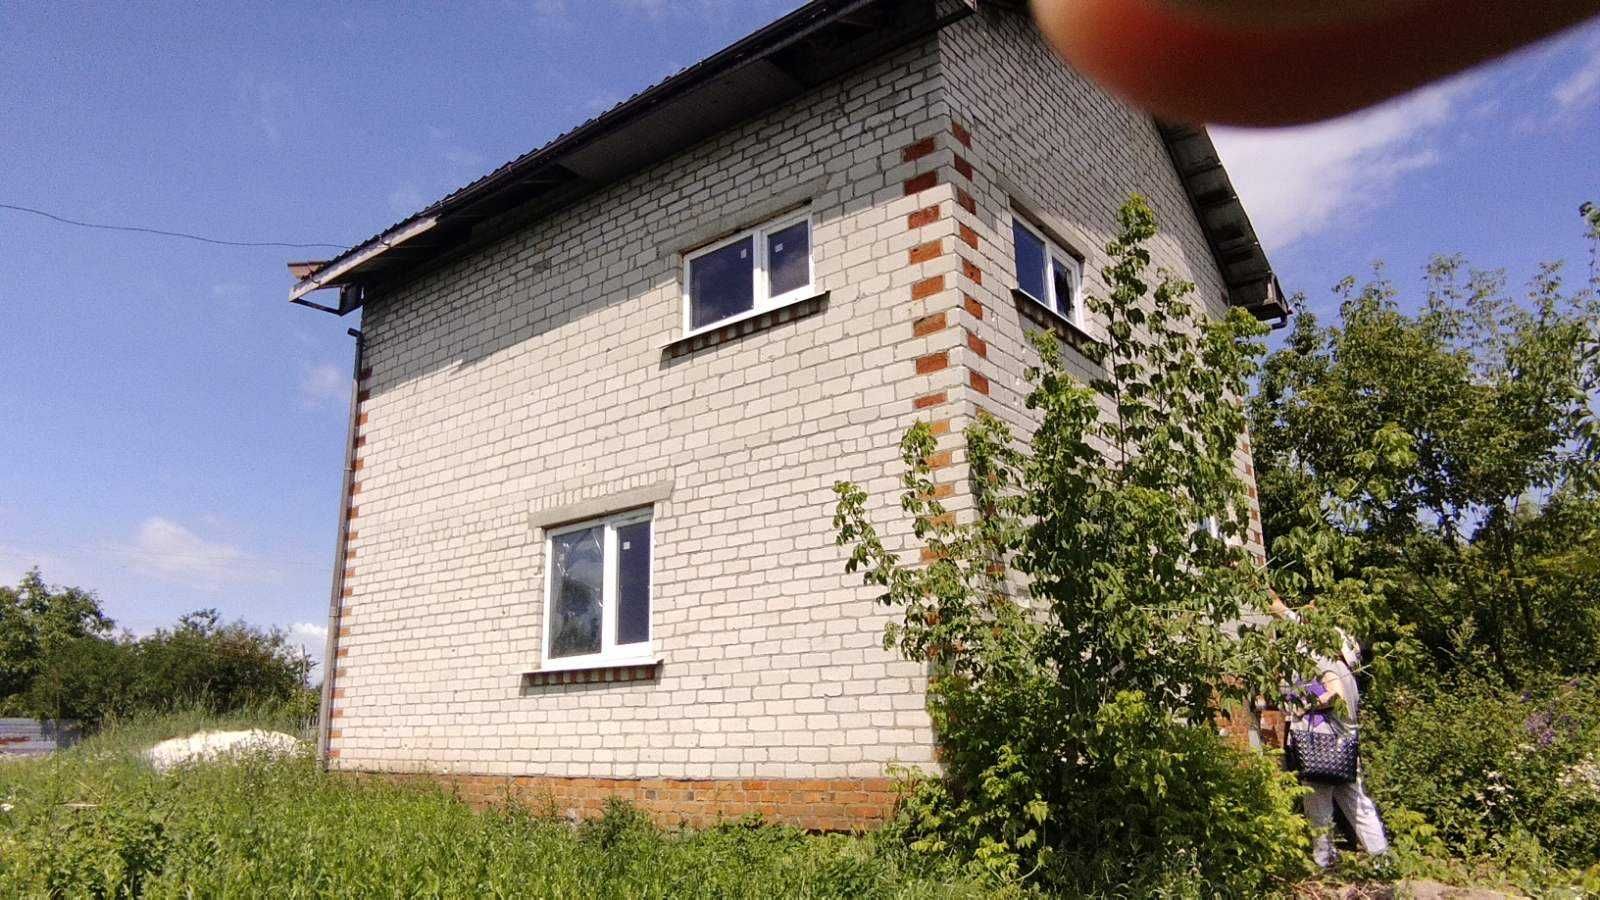 Продам приватний будинок в с. Миронівка району Харківської обл.